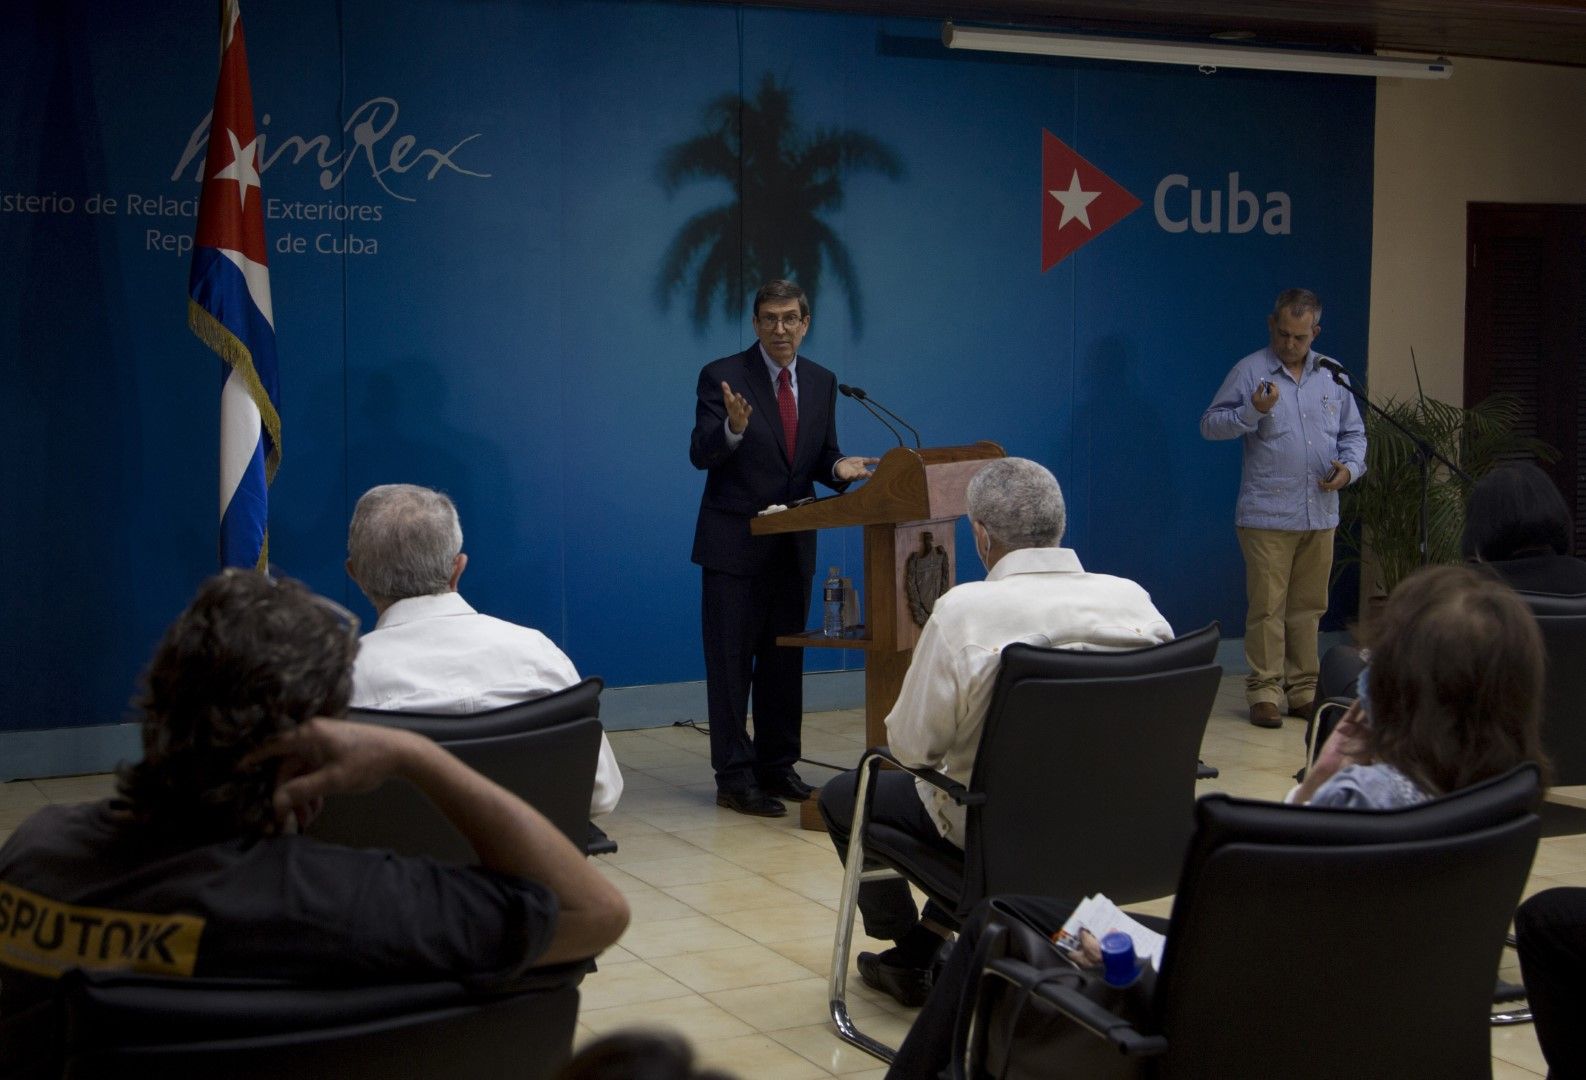 Външният министър на Куба Бруно Родригес говори на пресконференция в Хавана във вторник, 13 юли 2021 г., след антиправителствените протести през уикенда заради високи цени и недостигана храна в островната държава